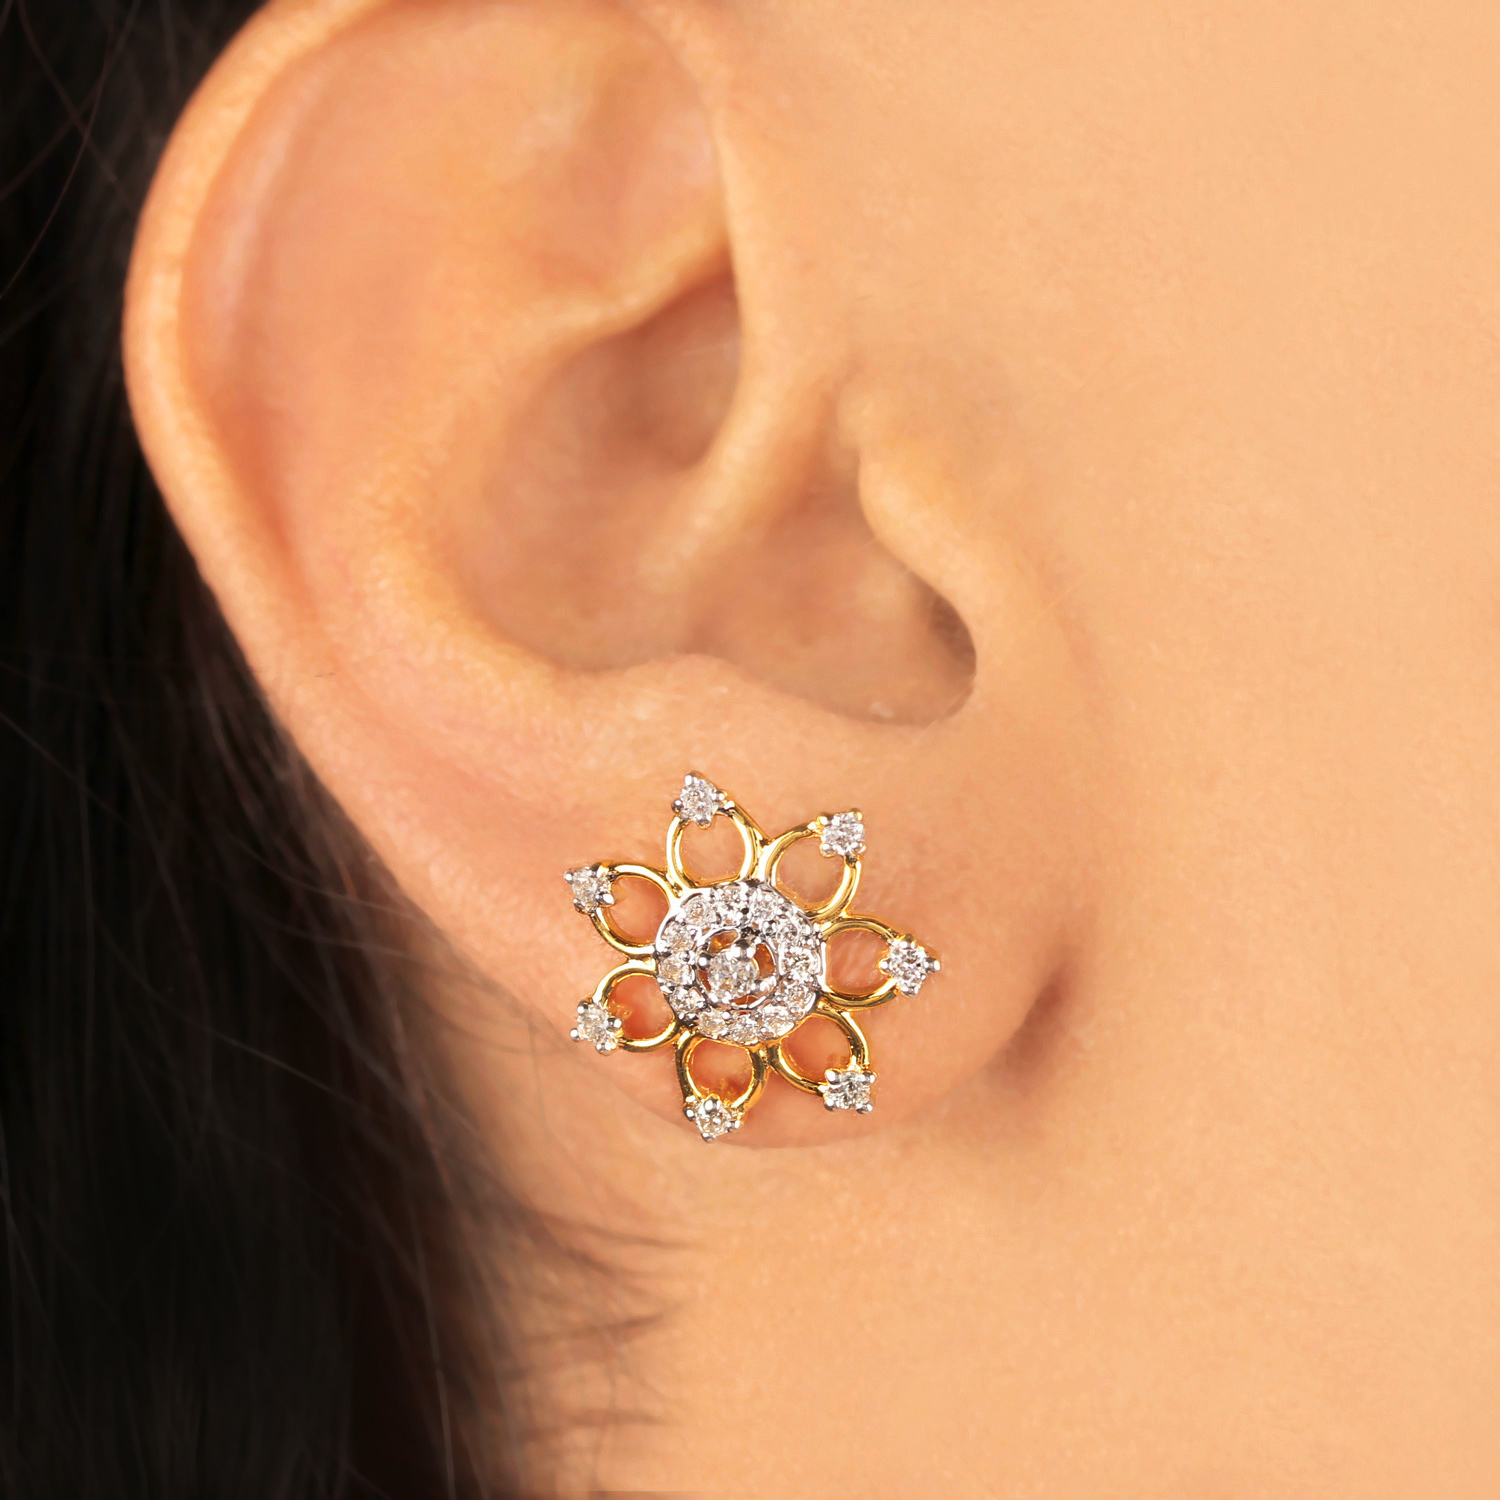 Flower Designed Earring In Gold